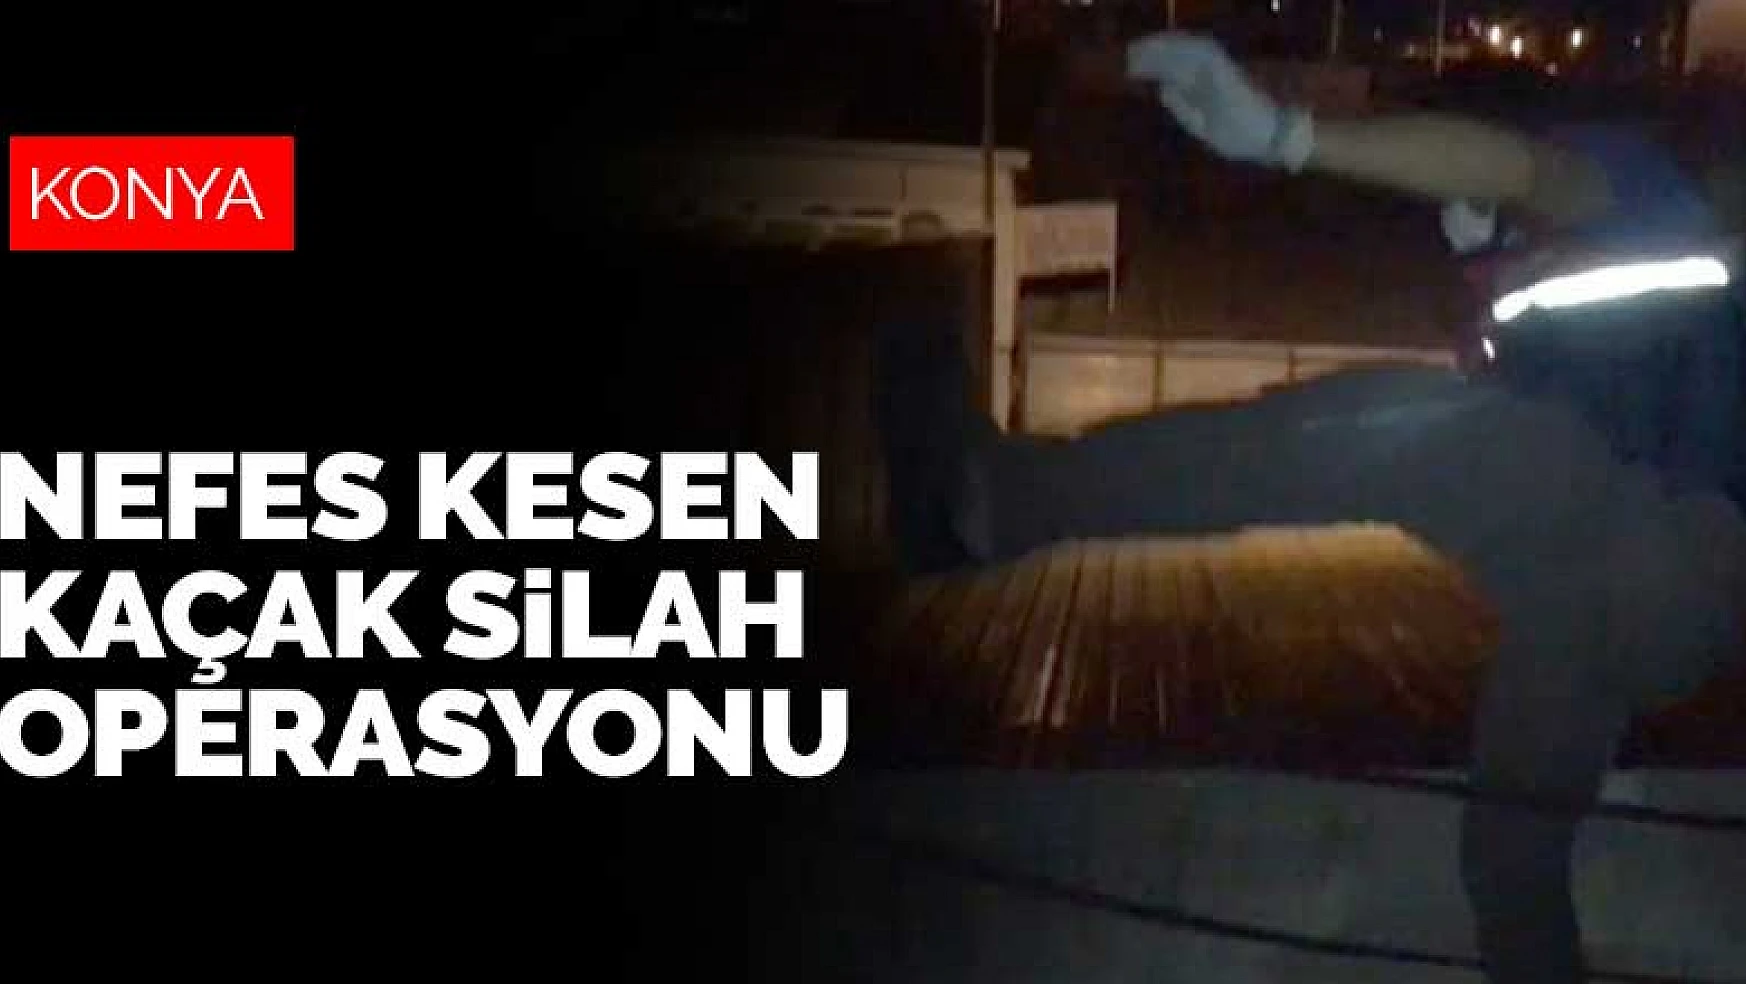 Jandarmadan Konya-Antalya bağlantılı nefes kesen kaçak silah operasyonu